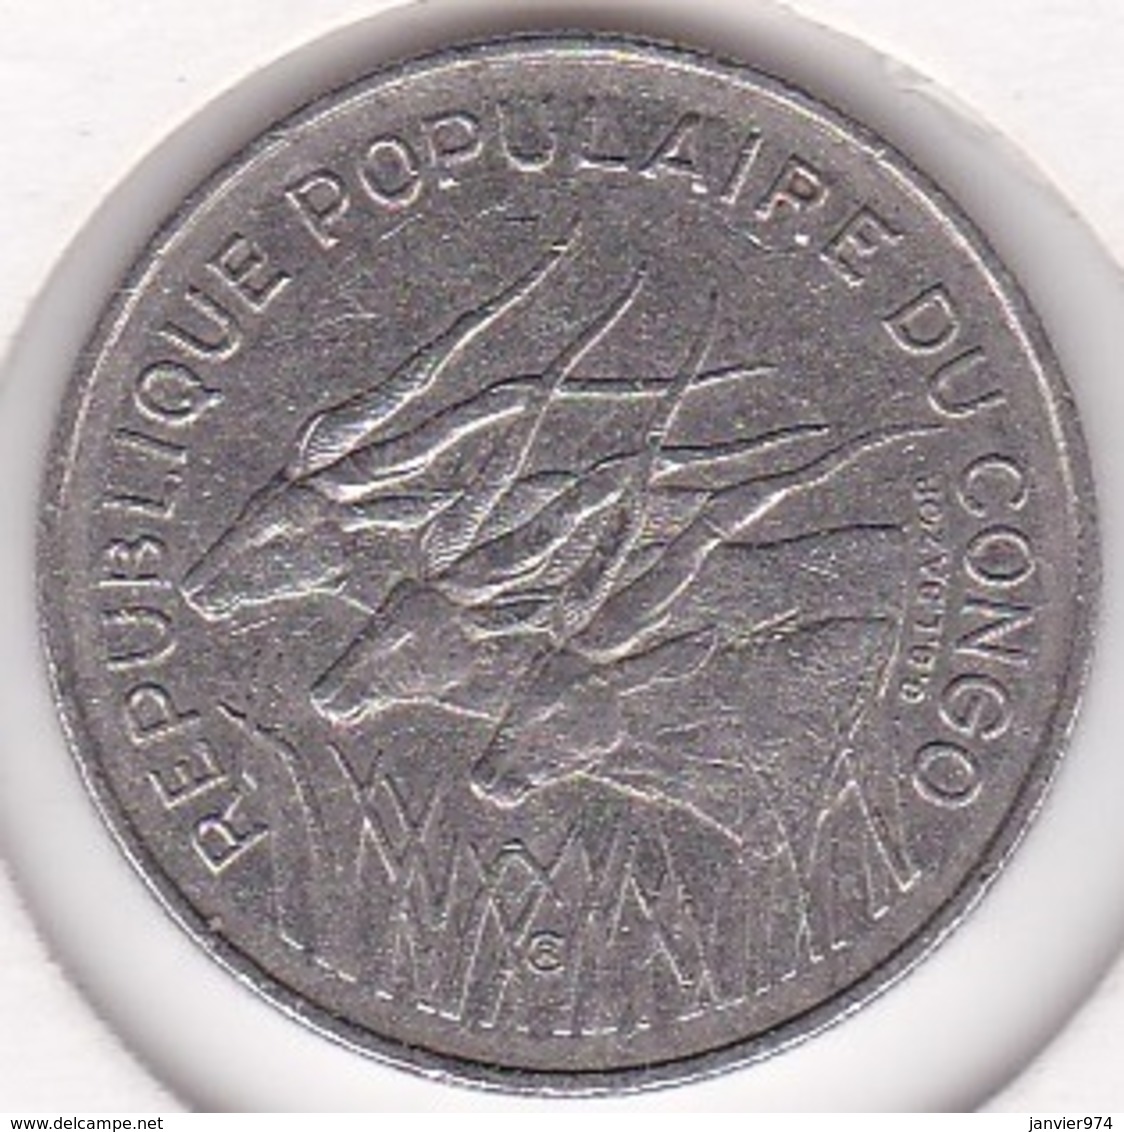 Republique Populaire Du Congo. 100 Francs 1971, En Nickel. KM# 1 - Congo (République 1960)